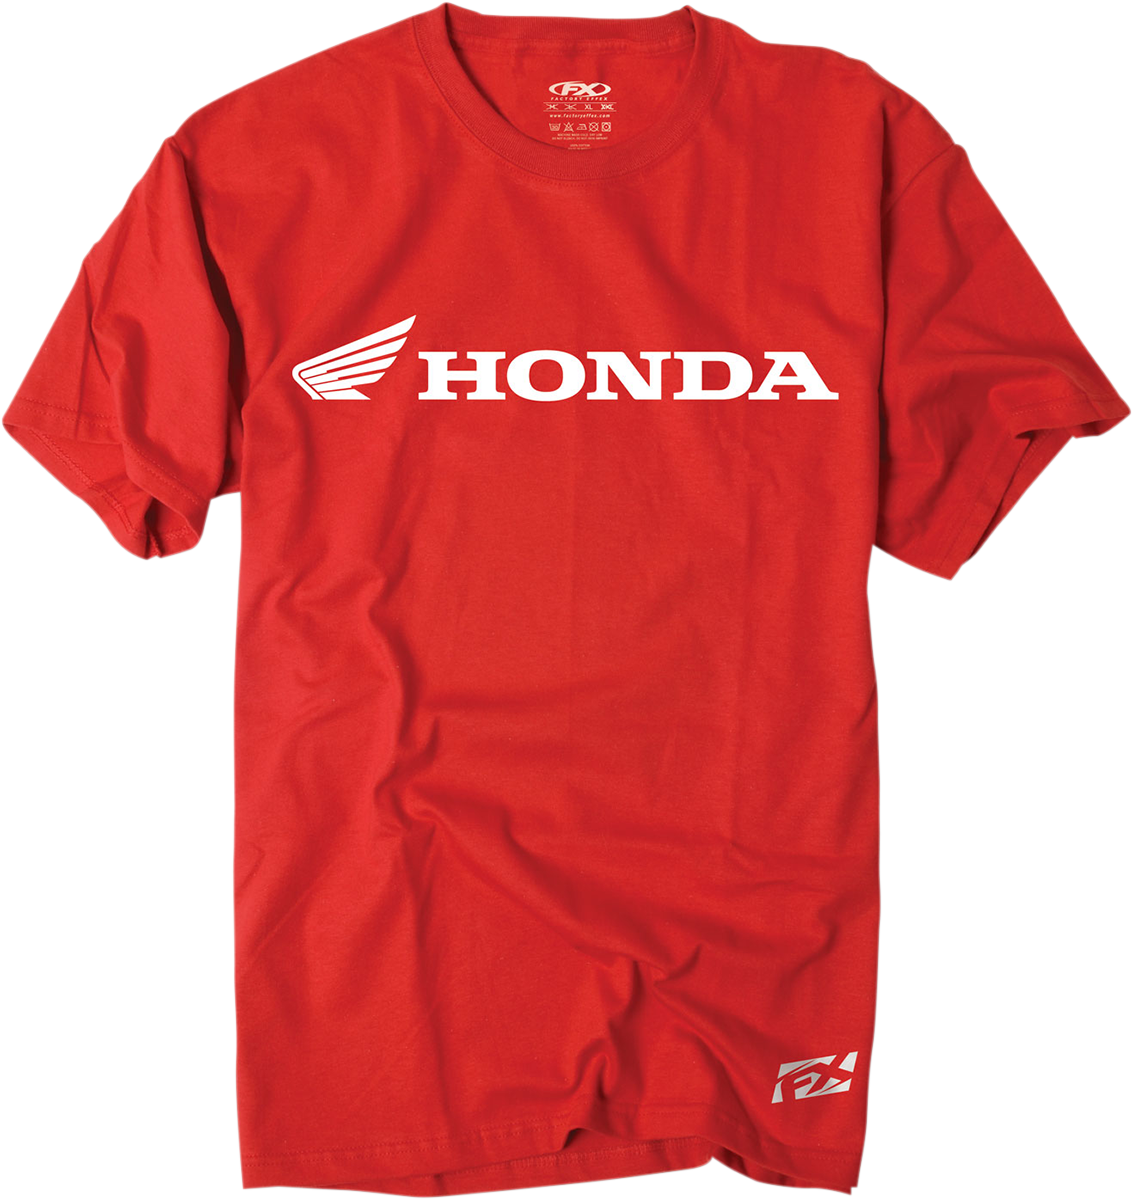 FACTORY EFFEX Honda Horizontal T-Shirt - Red - Medium 15-88330